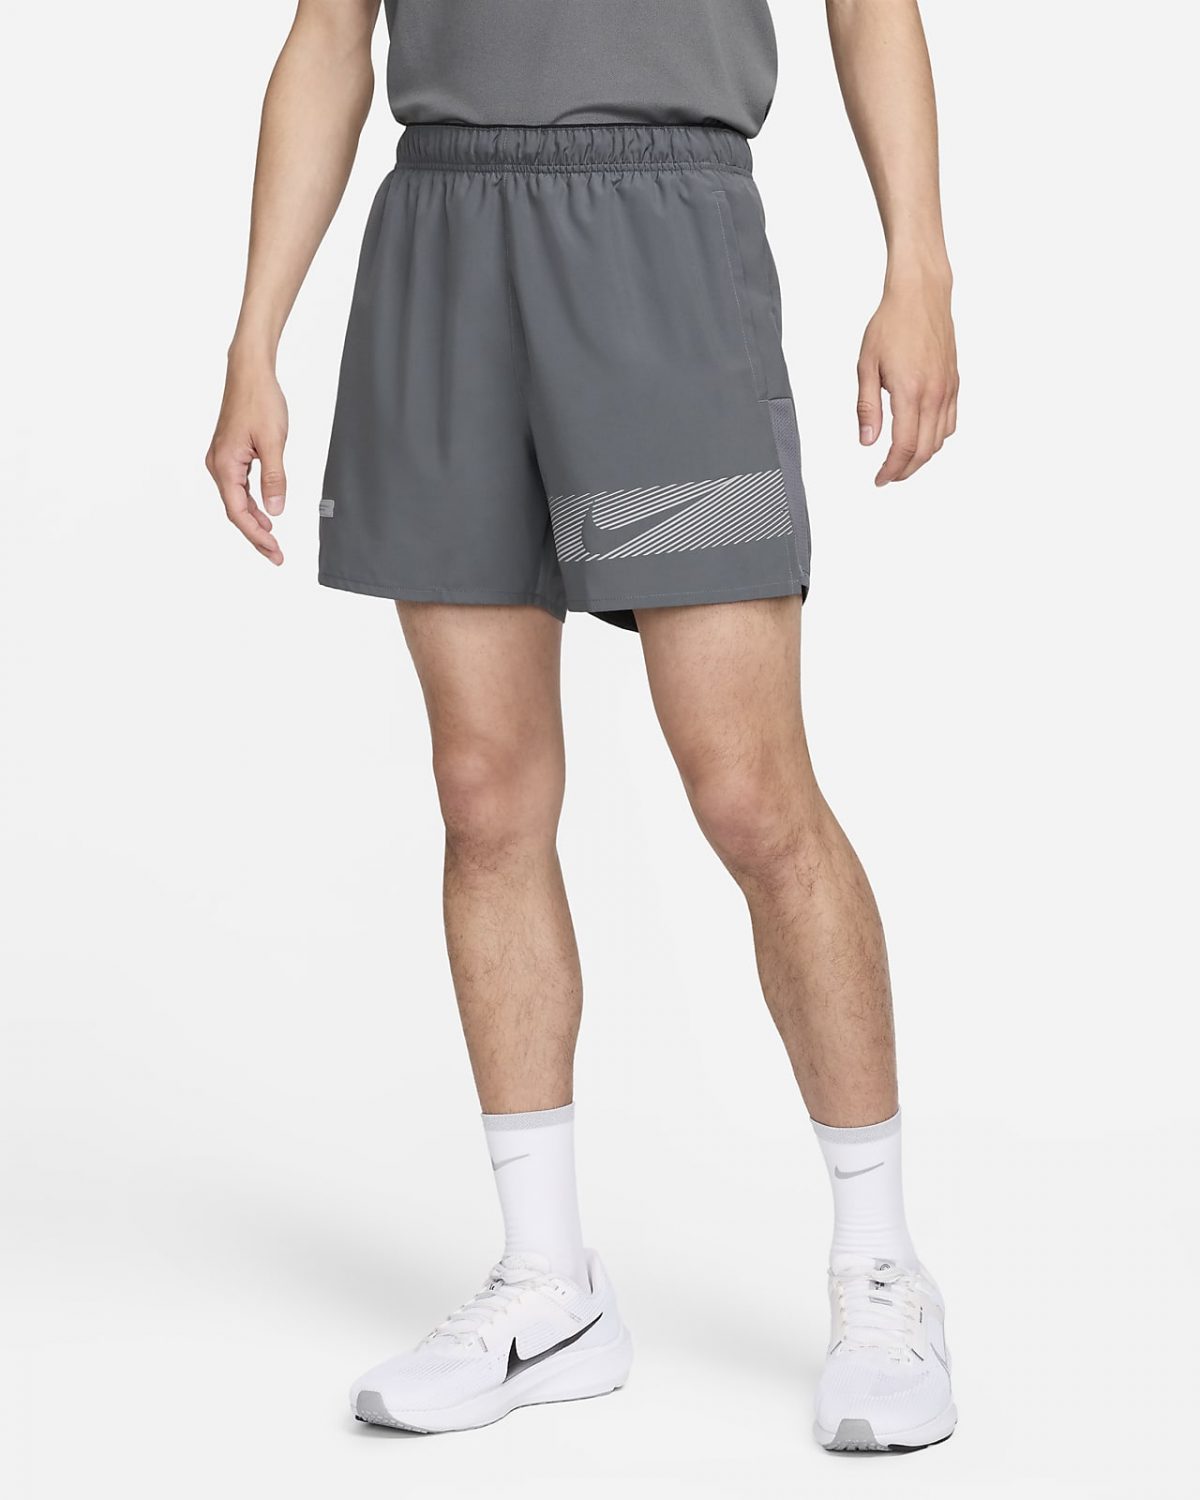 Мужские шорты Nike Challenger Flash черные фото